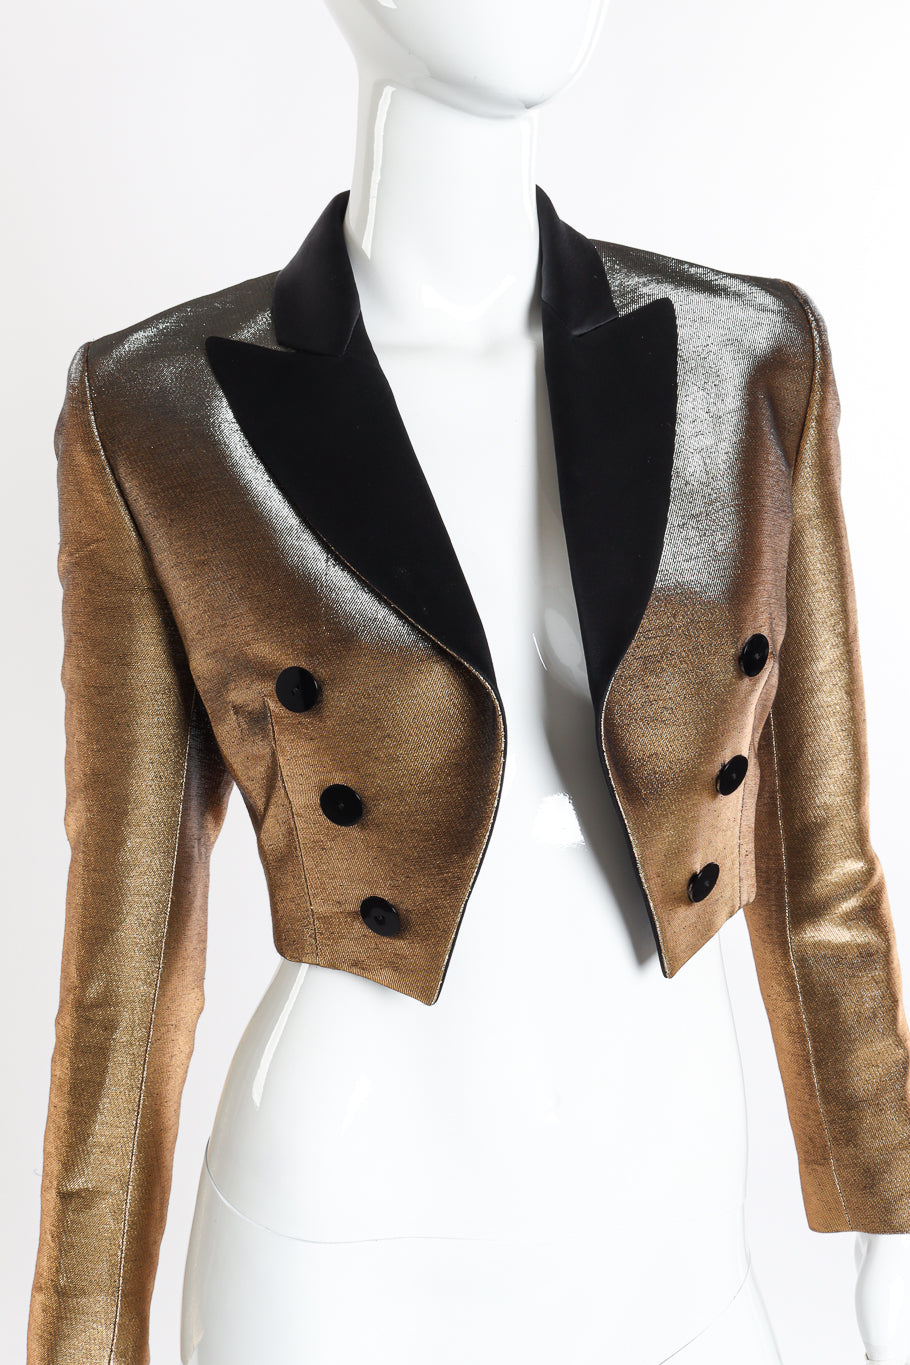 Jean Paul Gaultier Femme Cropped Lamé Tuxedo Jacket front on mannequin closeup @recessla